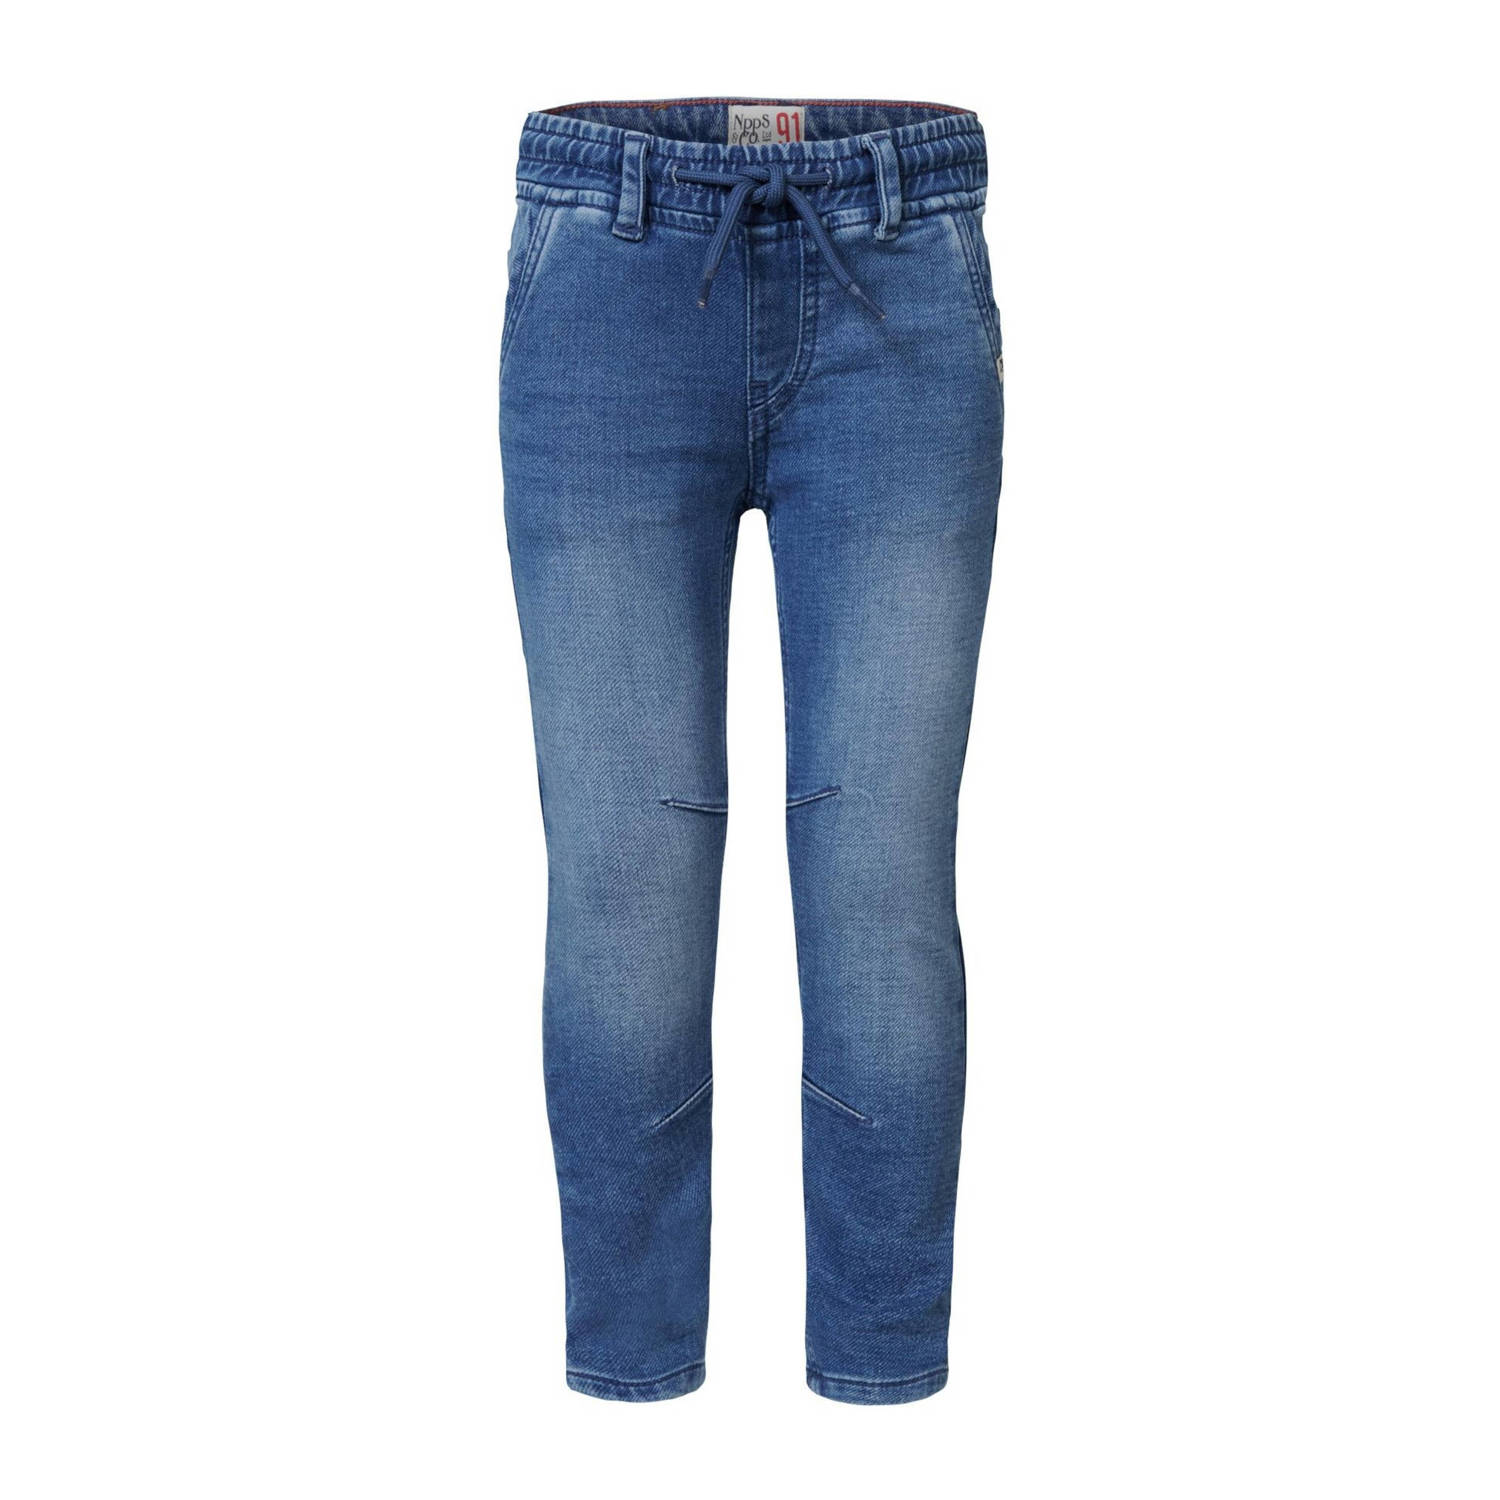 Noppies regular fit jeans Demorest dark blue denim